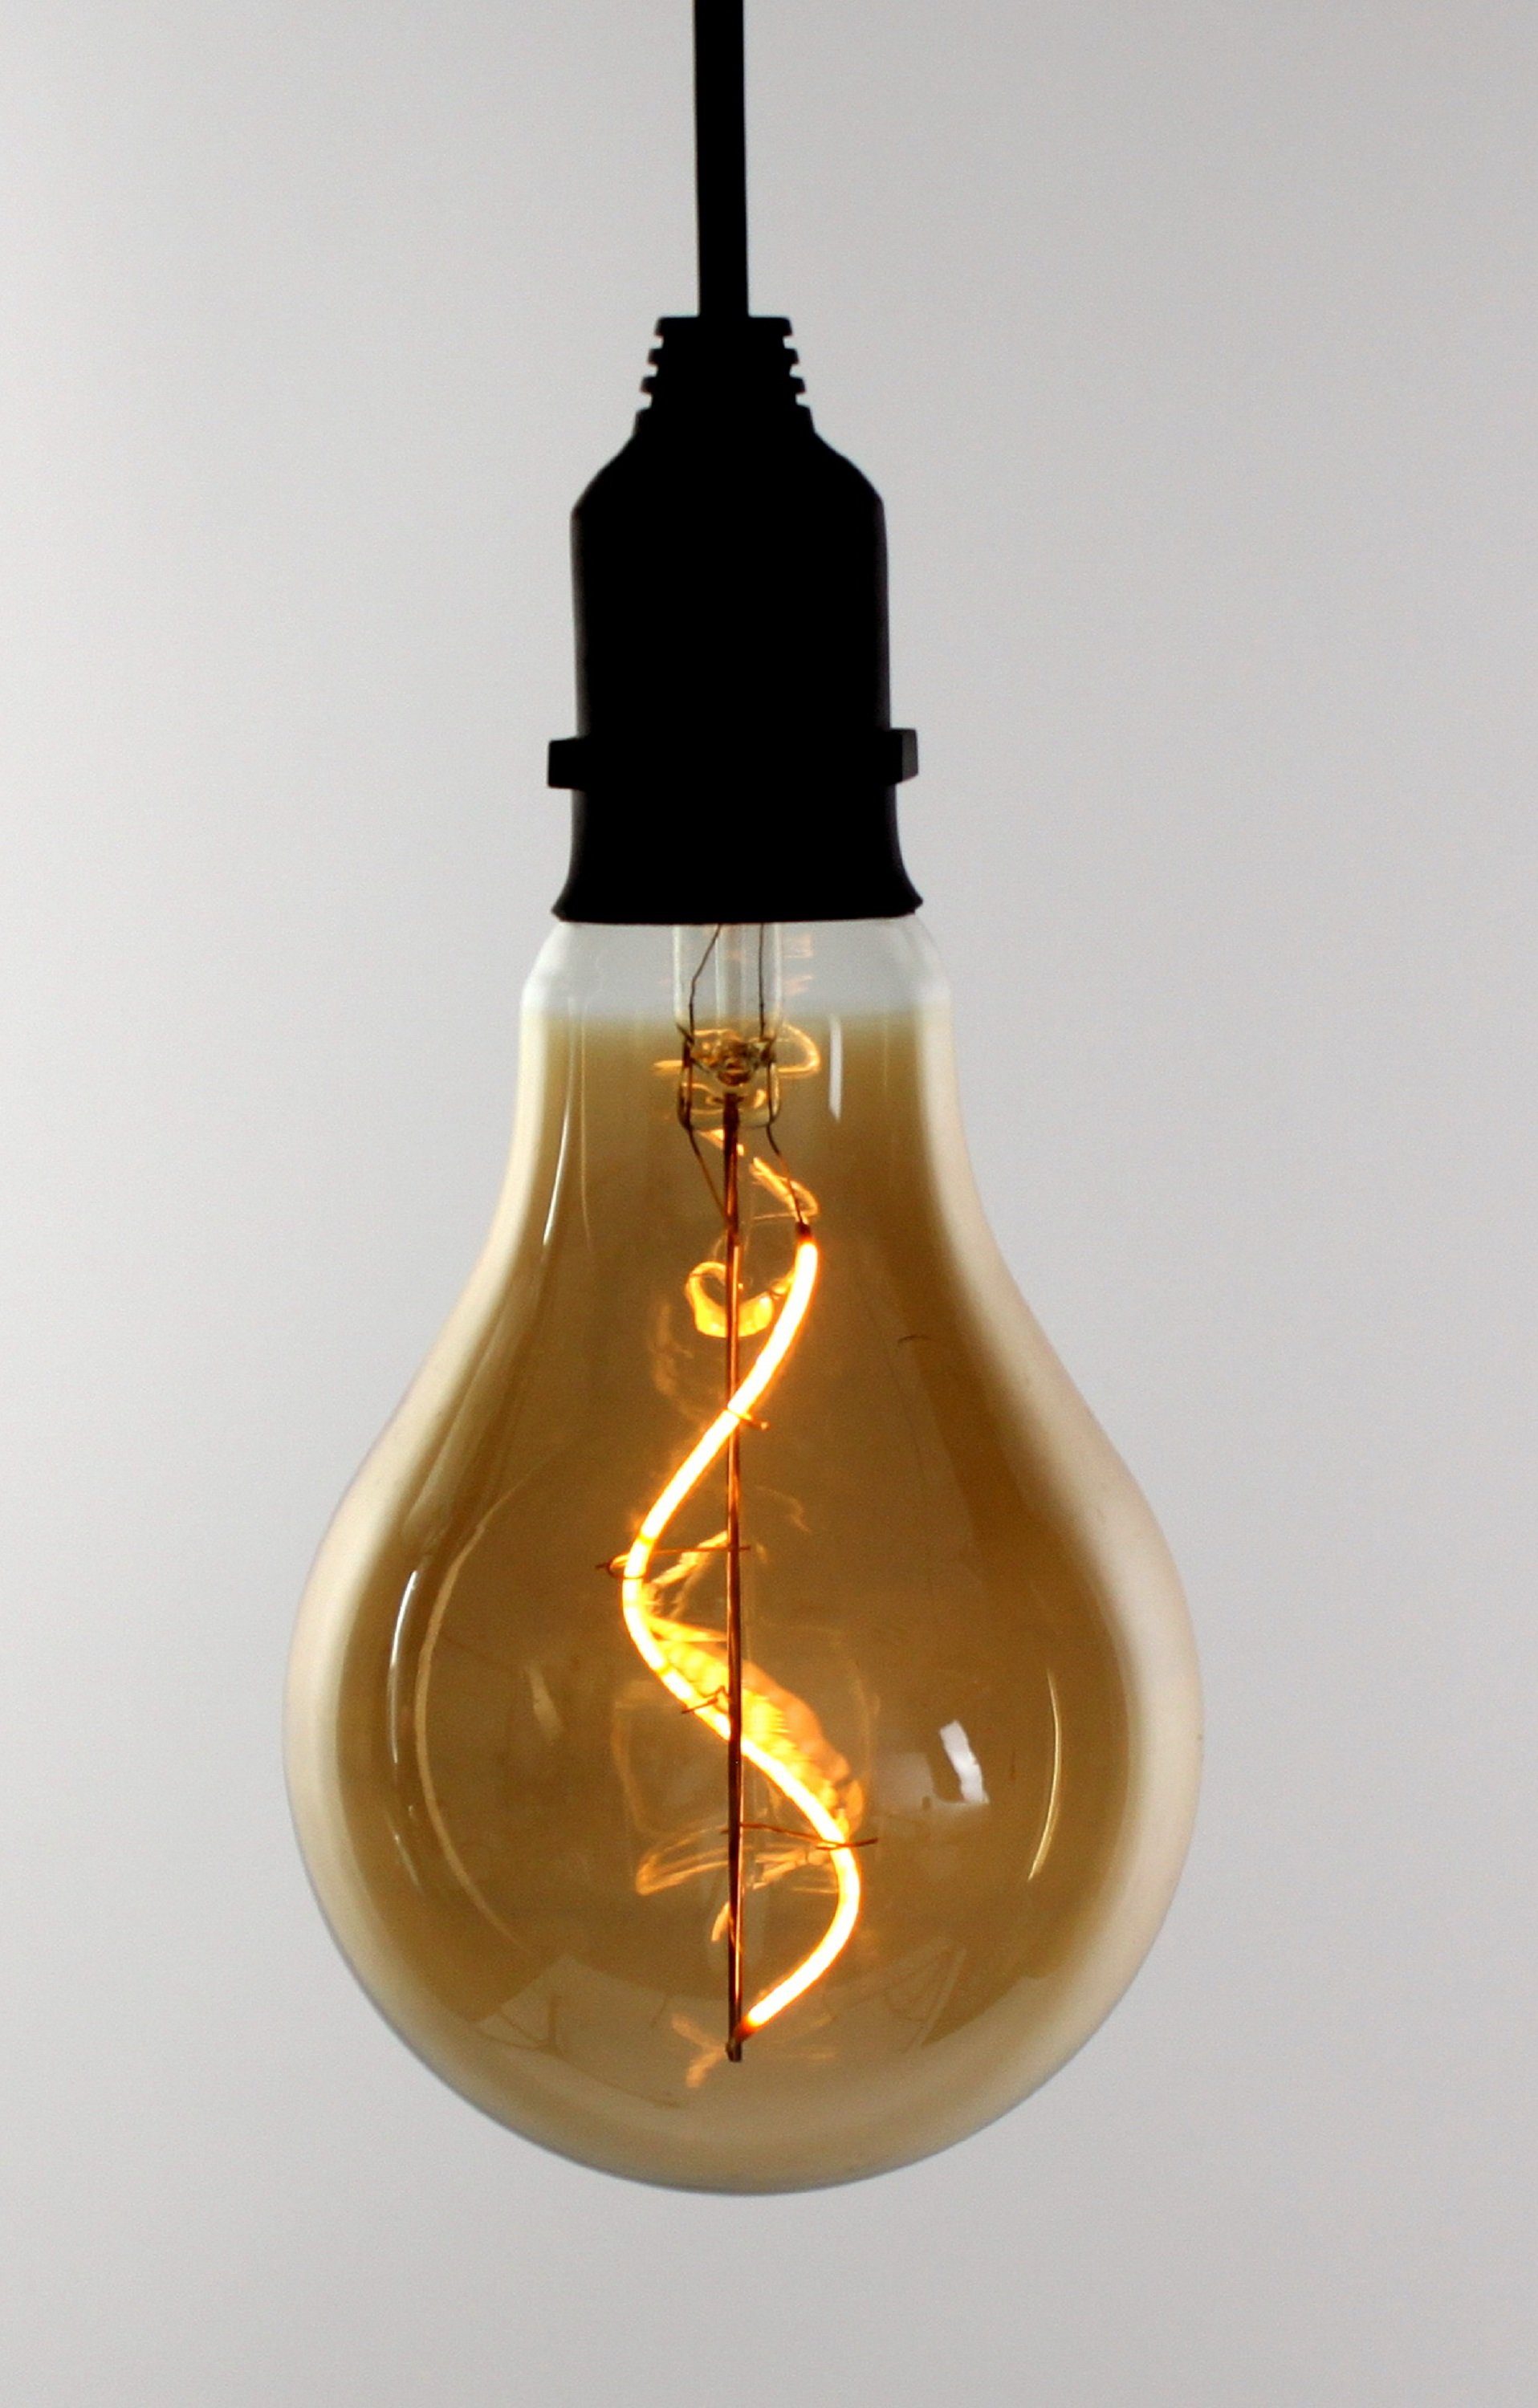 Werner Voß Stehlampe Outdoor LED Birne Amber-Finish Timer Beleuchtung Deko  Glühbirne Hängen Garten